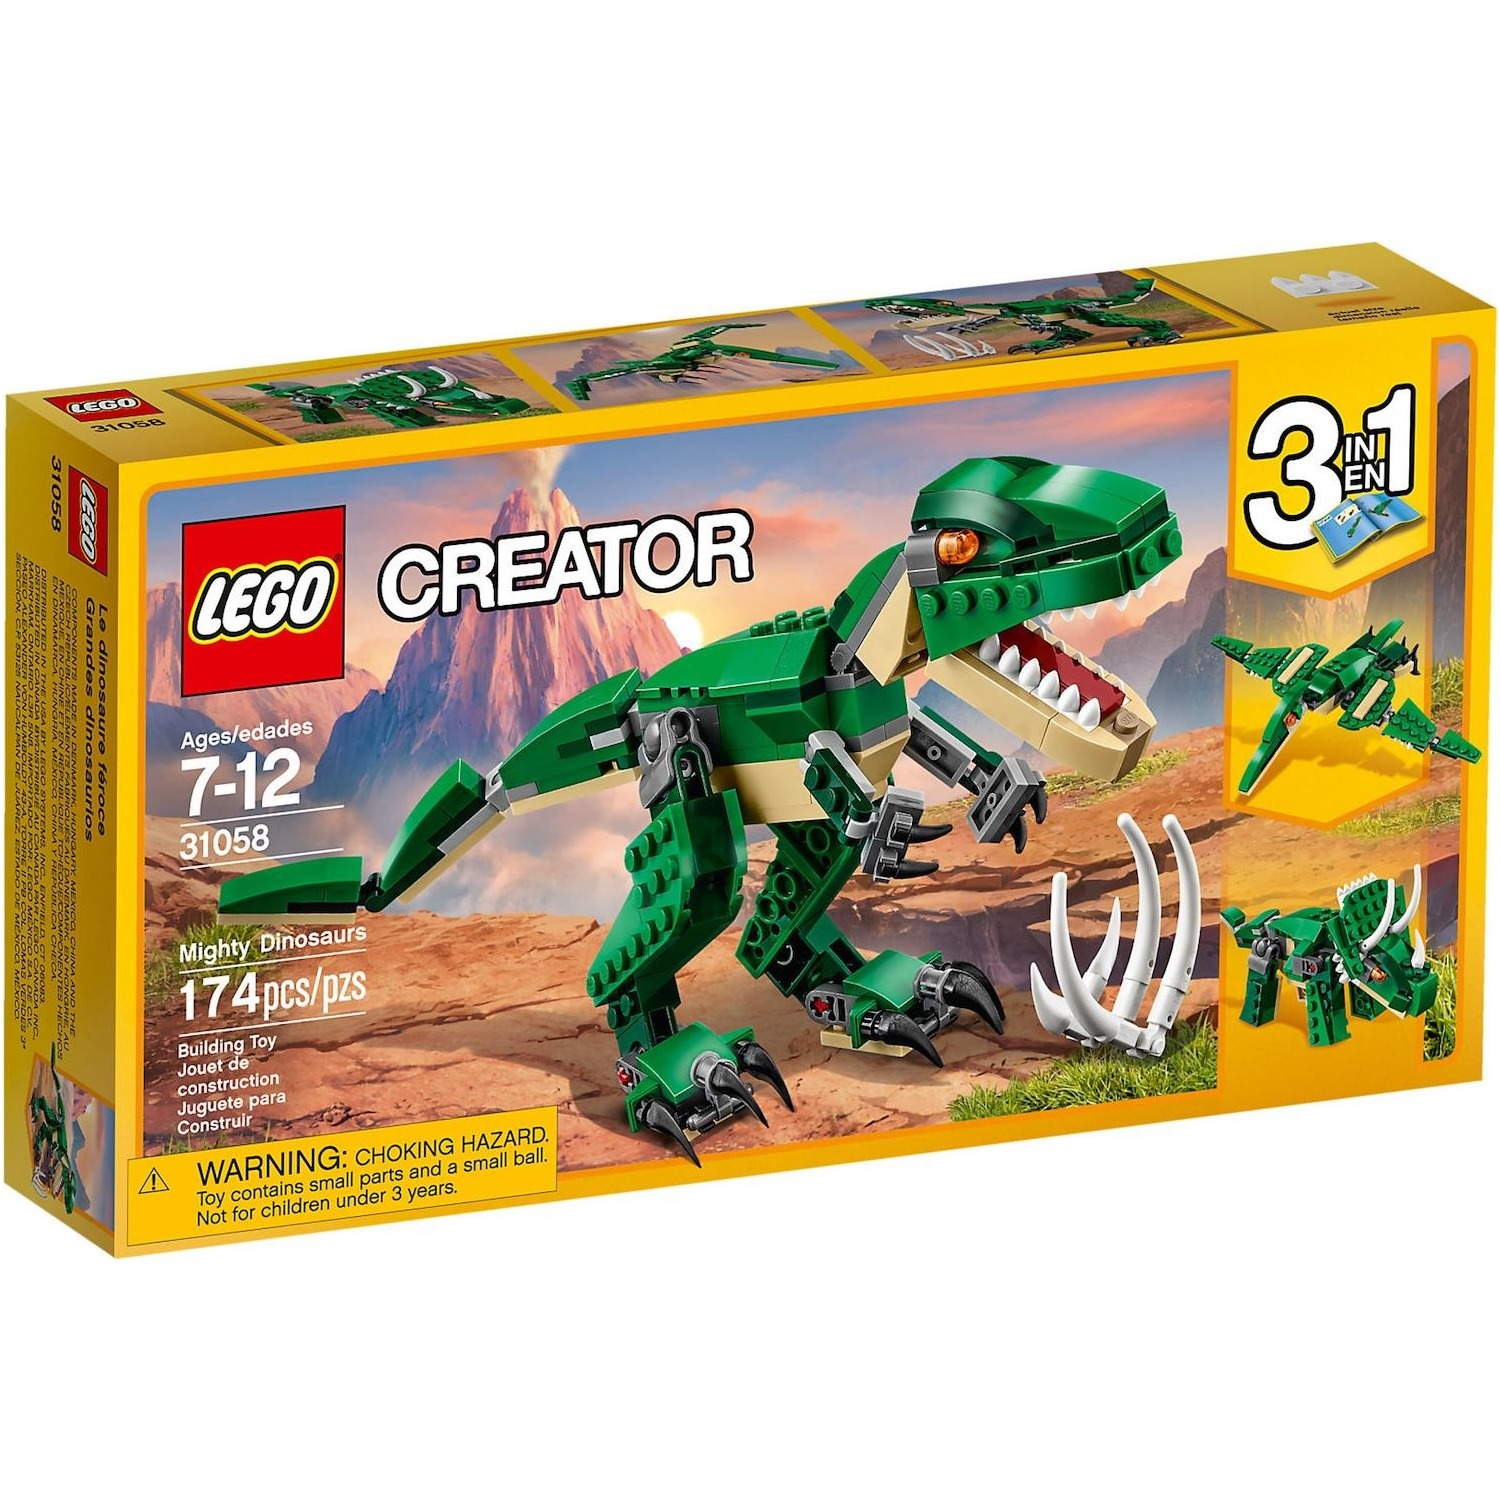 Immagine per Lego Creator Dinosauro da DIMOStore